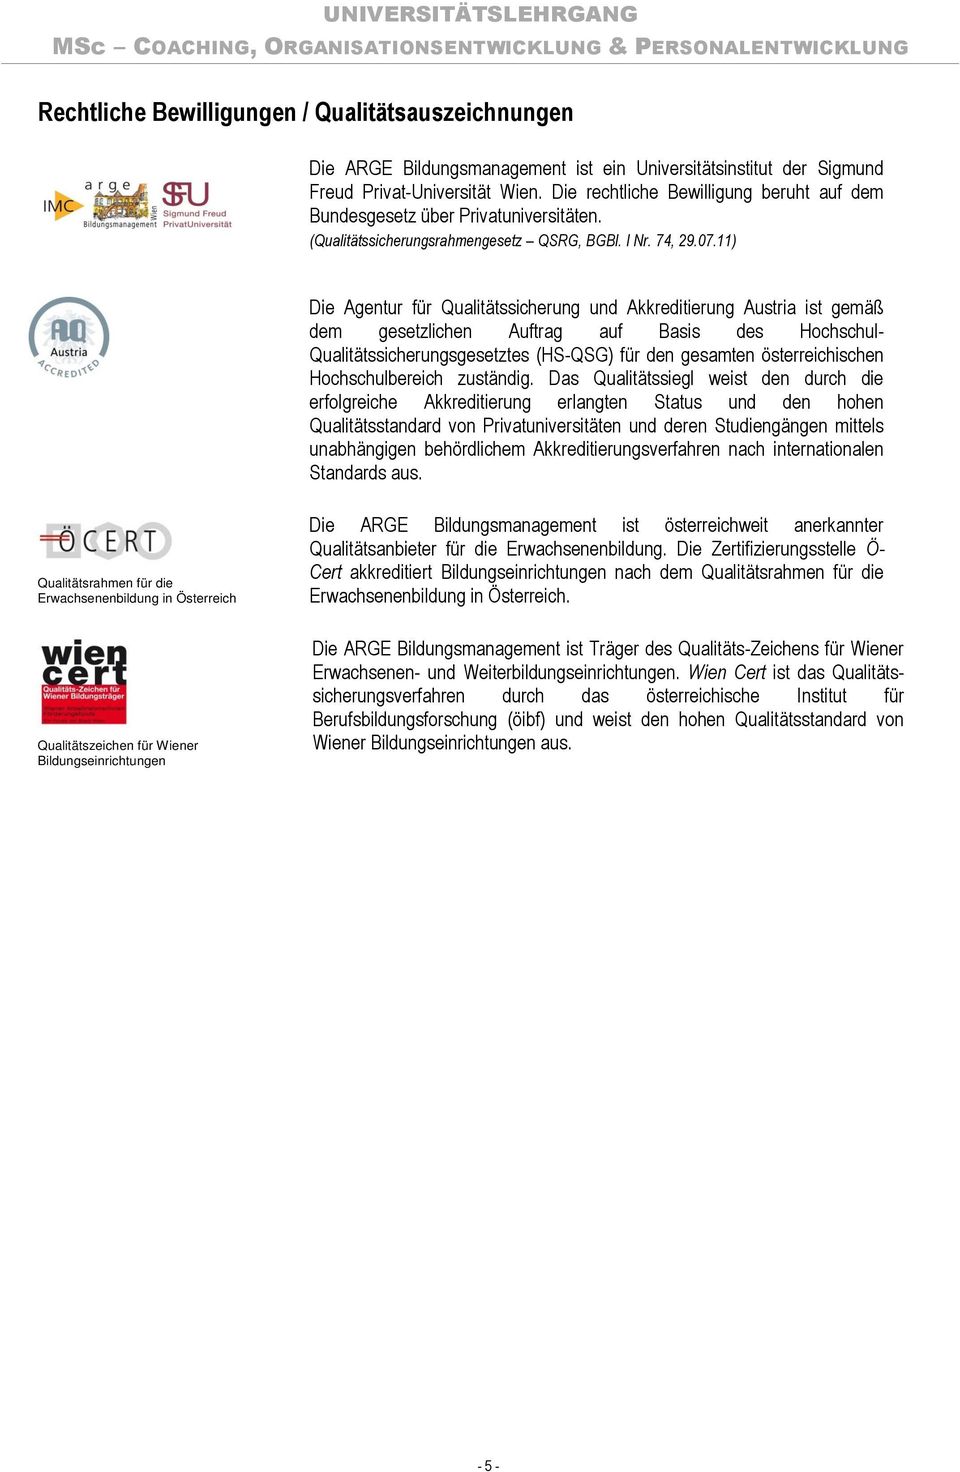 11) Die Agentur für Qualitätssicherung und Akkreditierung Austria ist gemäß dem gesetzlichen Auftrag auf Basis des Hochschul- Qualitätssicherungsgesetztes (HS-QSG) für den gesamten österreichischen